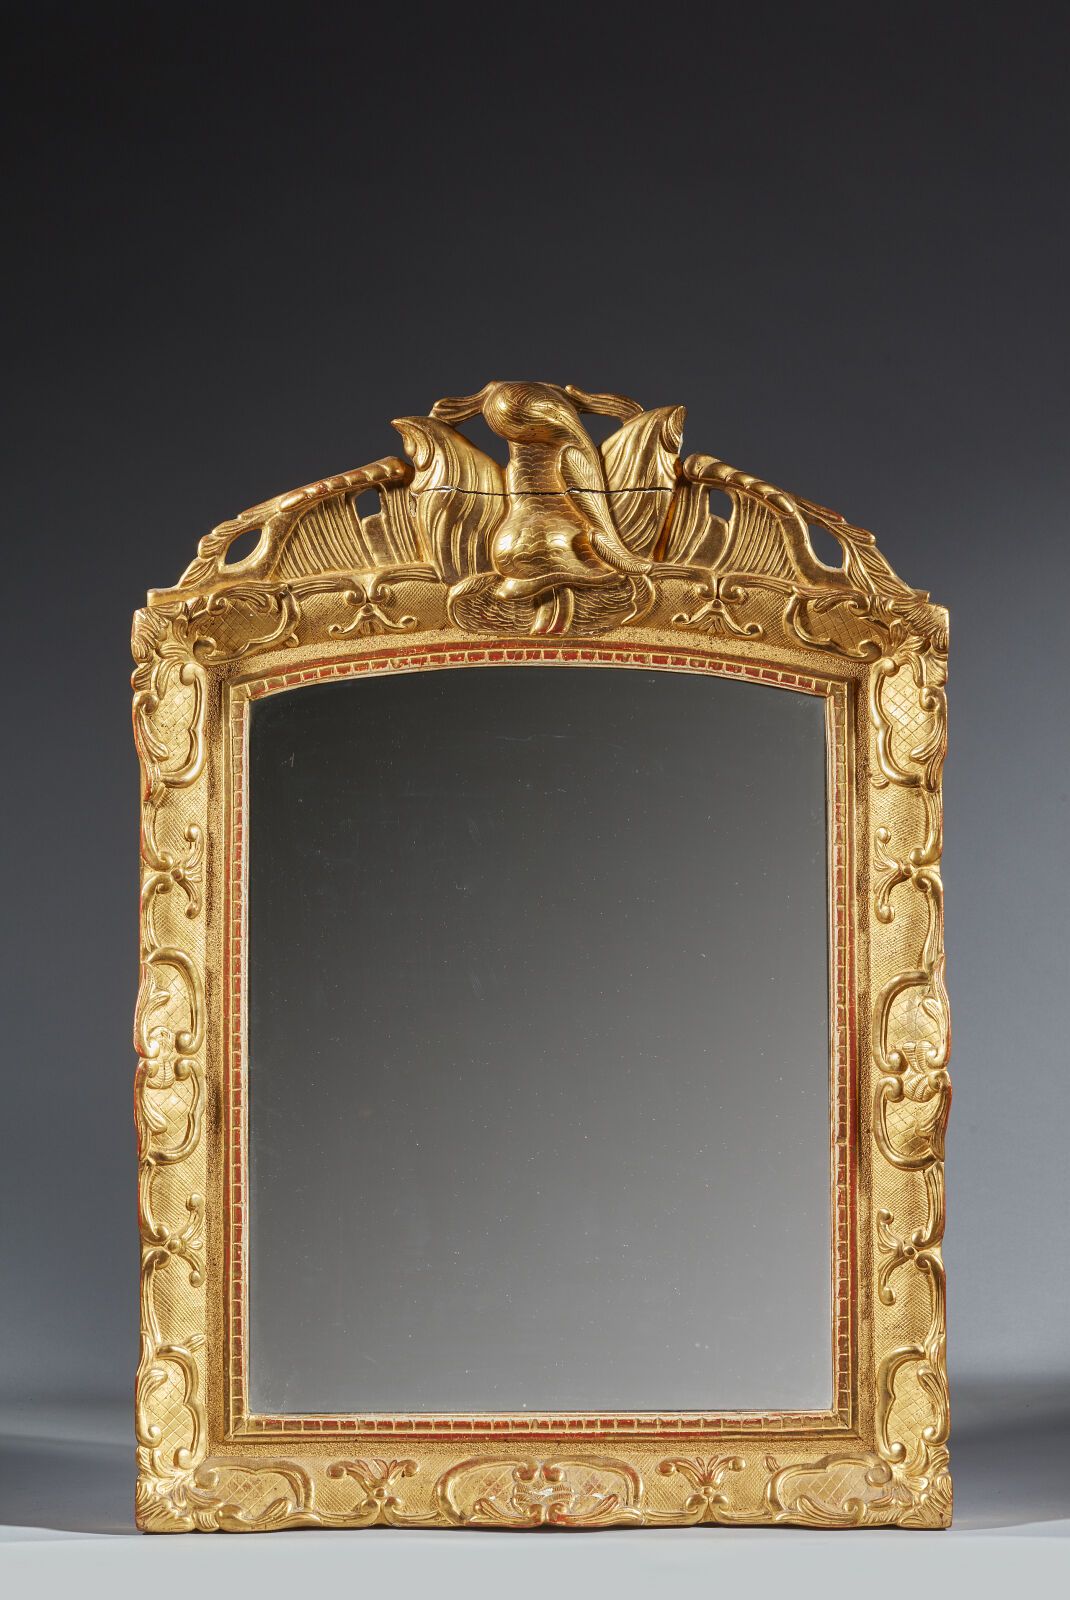 Null 镀金木镜，带风格化叶片装饰
十八世纪
(重新镀金，玻璃已更换，檐口有裂缝）。
高71 厘米；宽：52 厘米